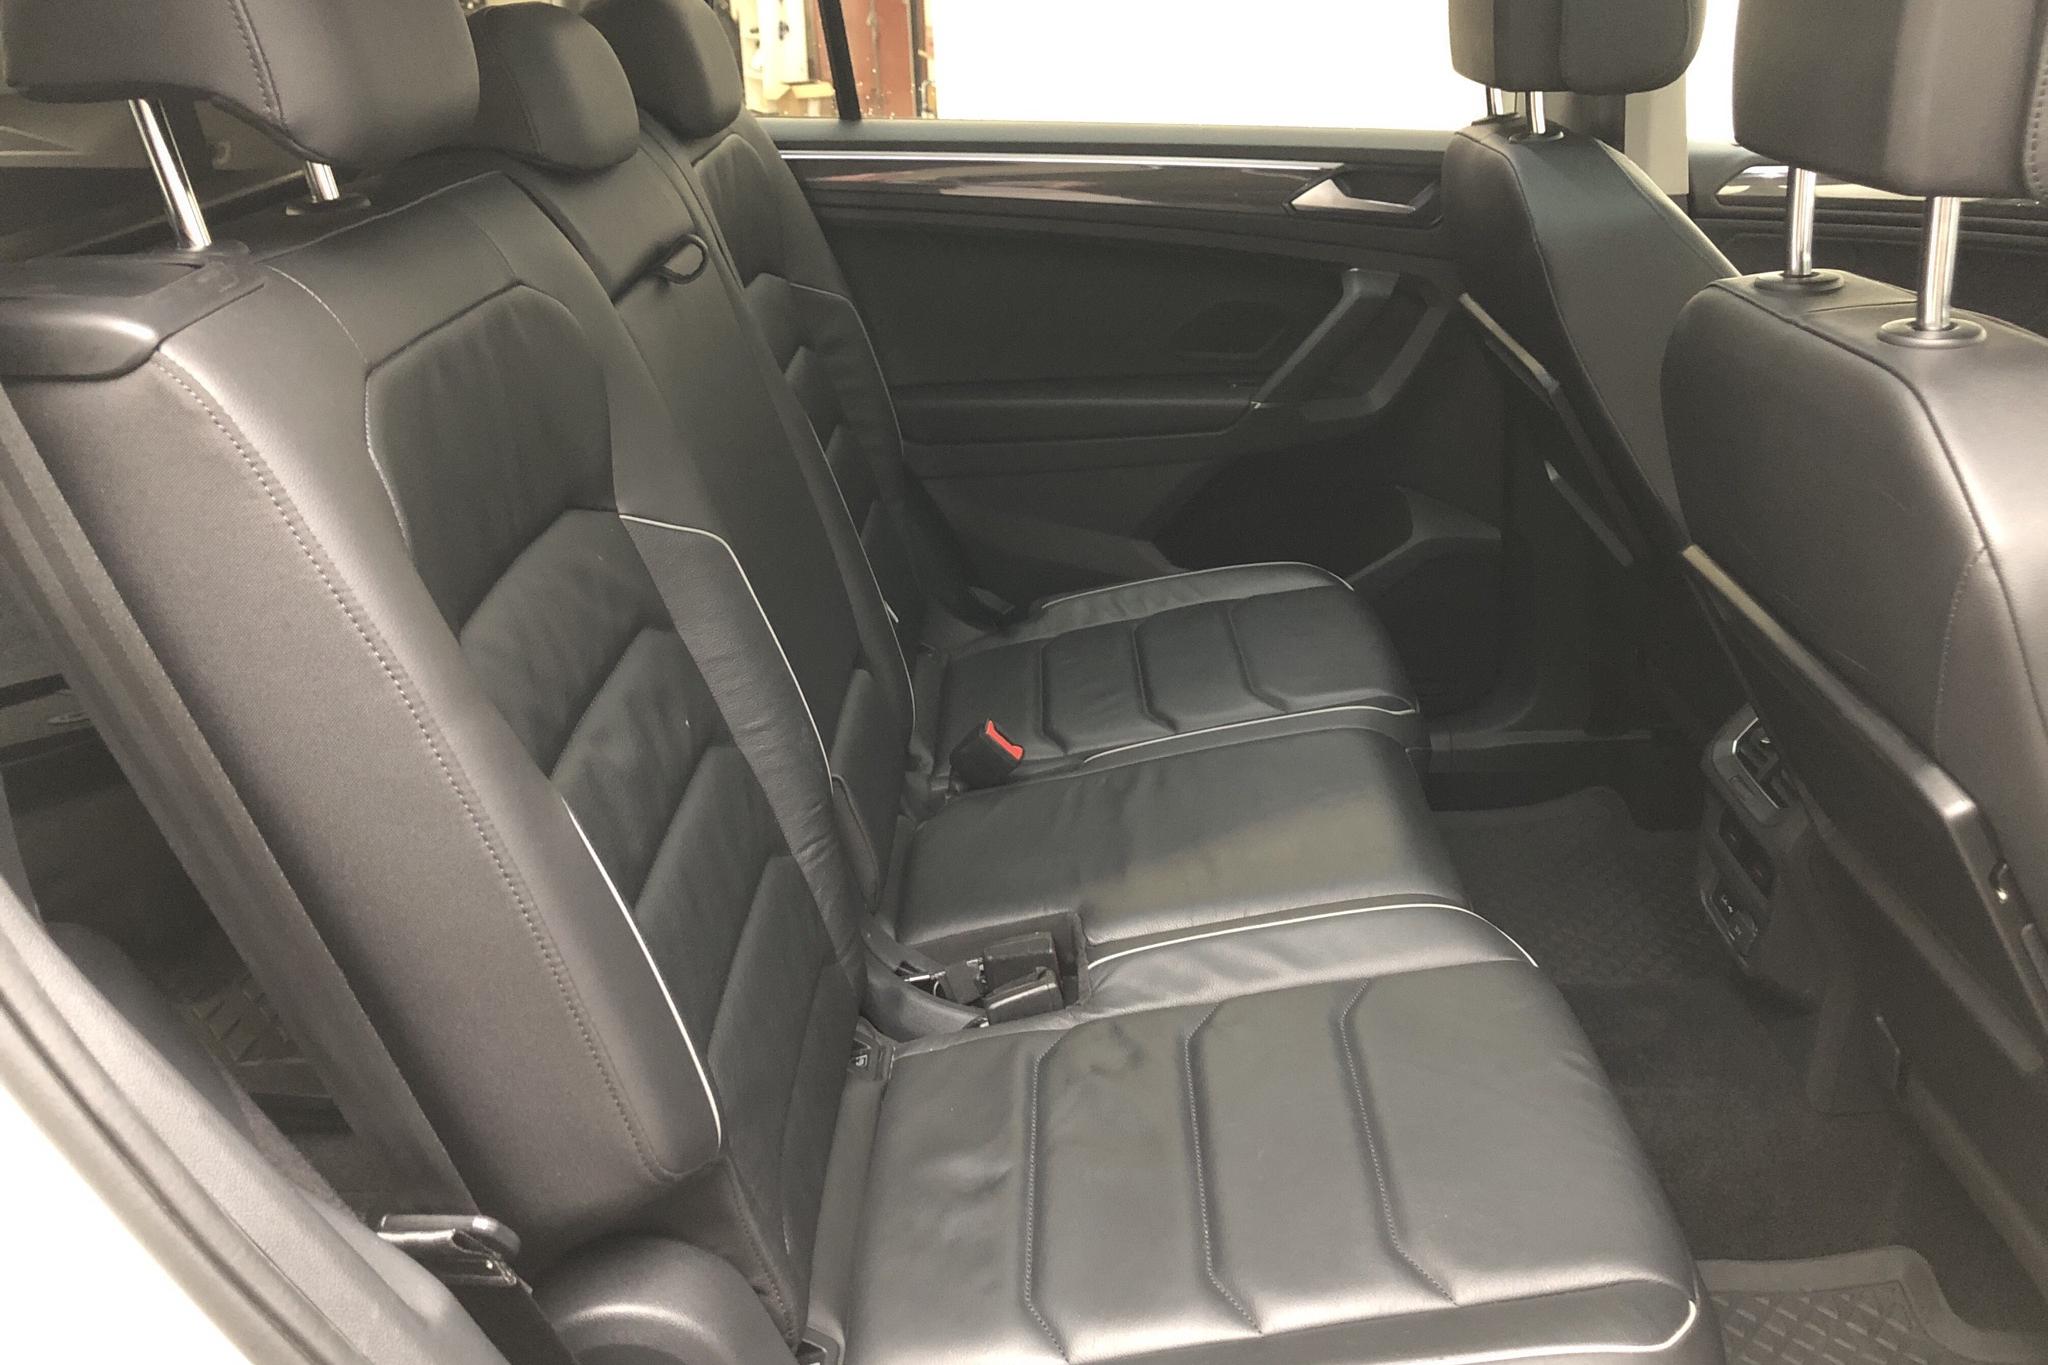 VW Tiguan Allspace 2.0 TDI 4MOTION (190hk) - 224 930 km - Automatic - white - 2018